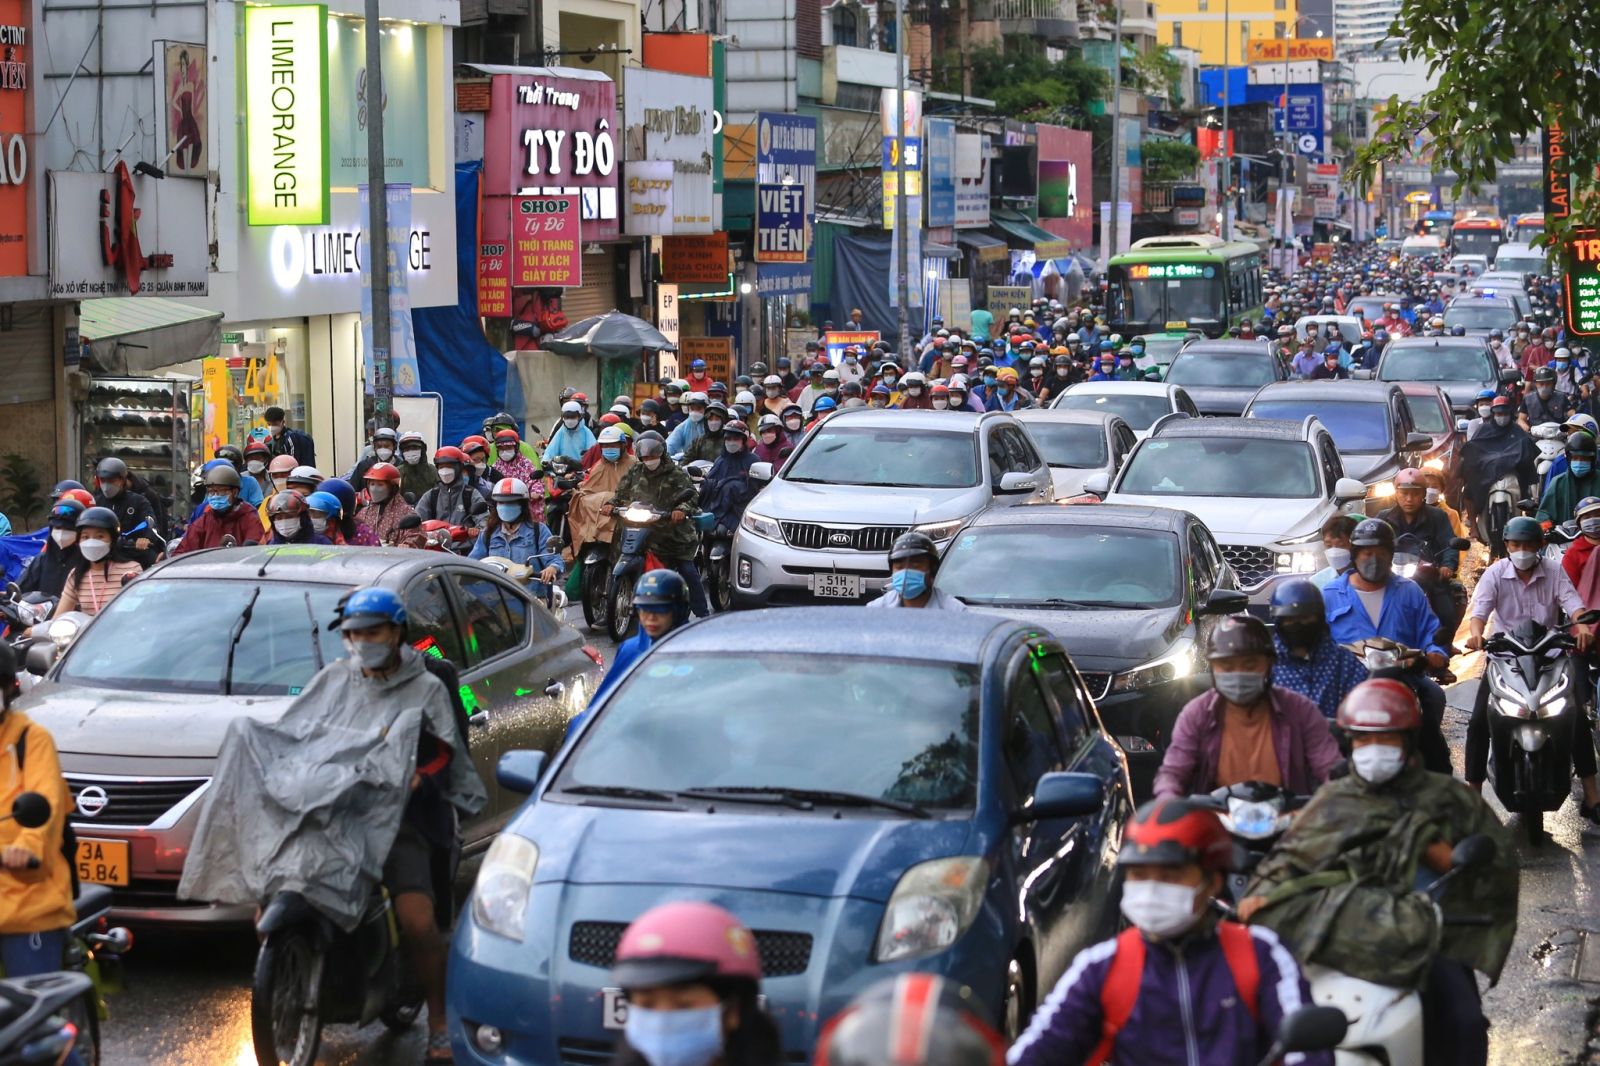 TP.HCM và Hà Nội đang nỗ lực triển khai các biện pháp nhằm hạn chế xe cá nhân, giảm ùn tắc  NHẬT THỊNH